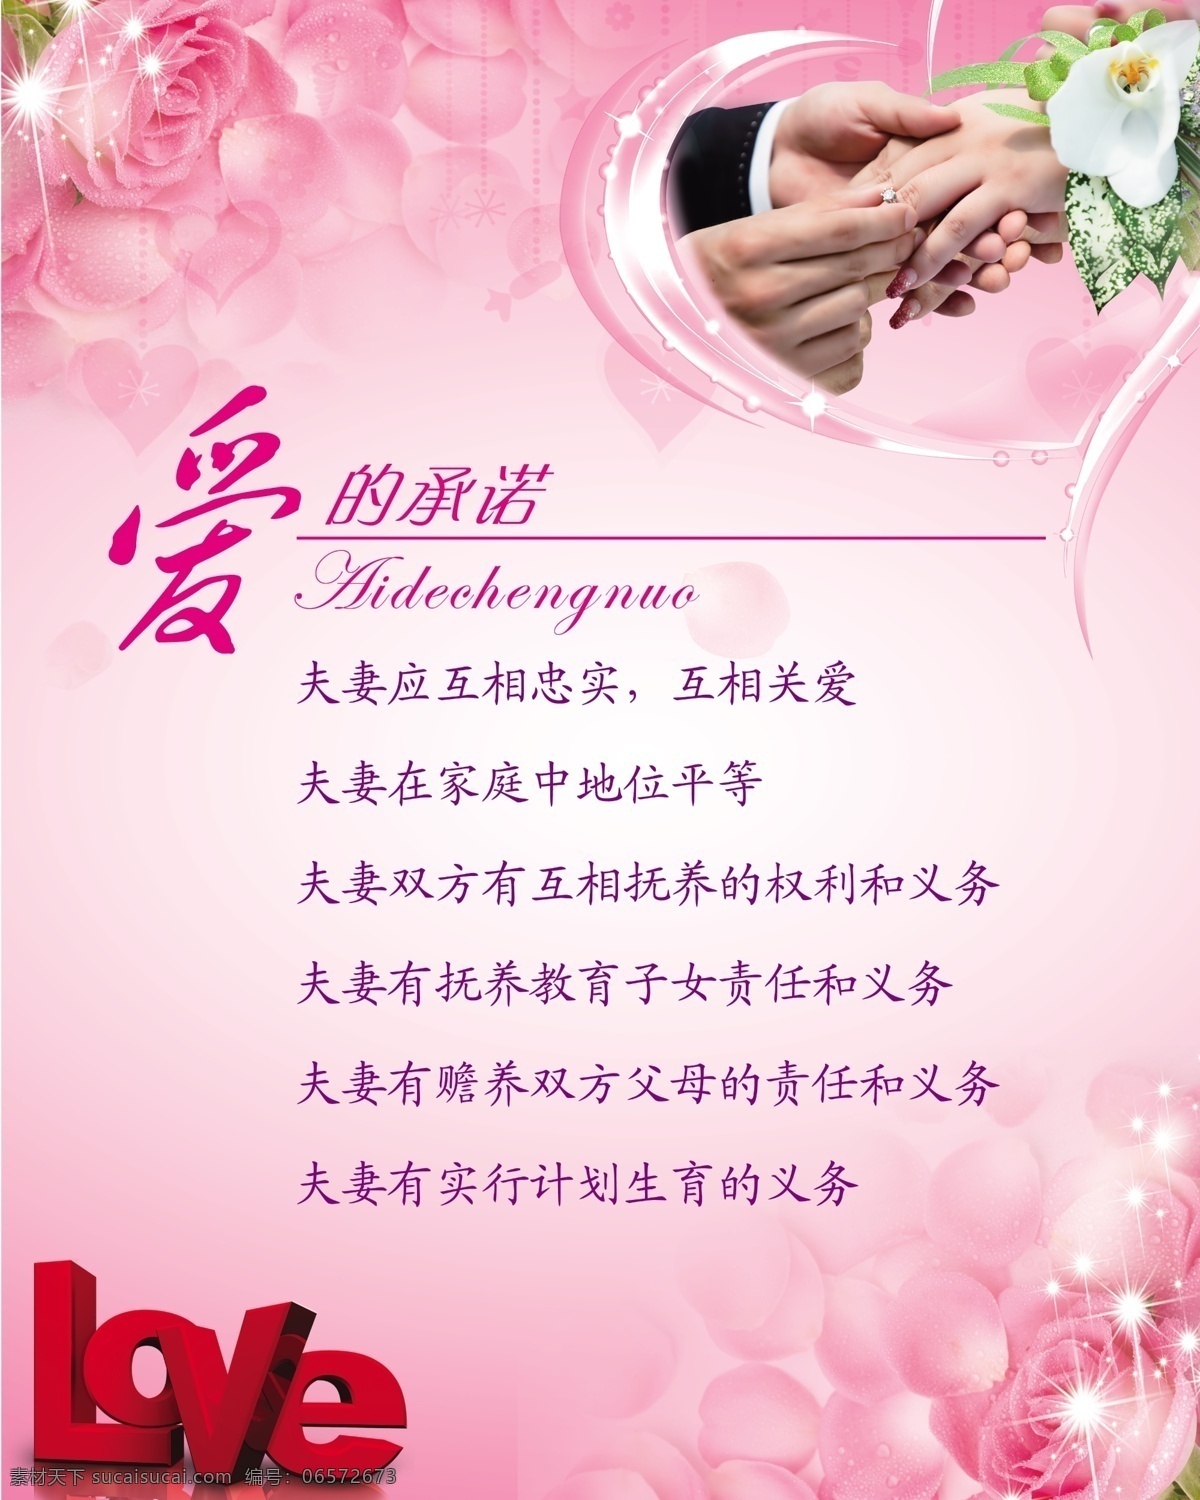 爱的承诺 love 玫瑰花 粉色背景 牵手 戒指 婚姻登记处 宣传图版 广告设计模板 源文件